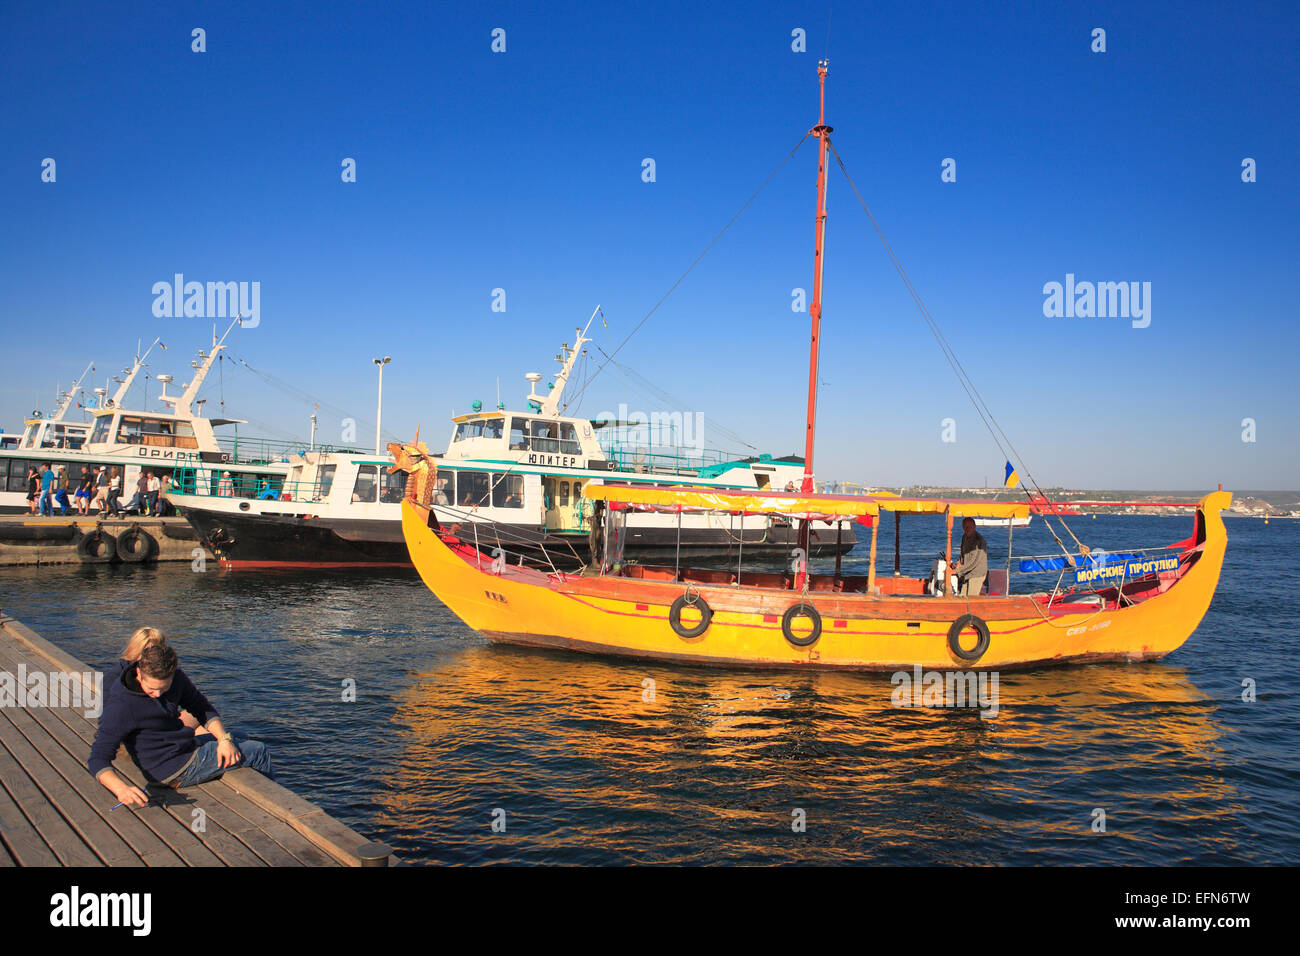 View of Bay of Sevastopol, Sevastopol, Crimea, Ukraine Stock Photo